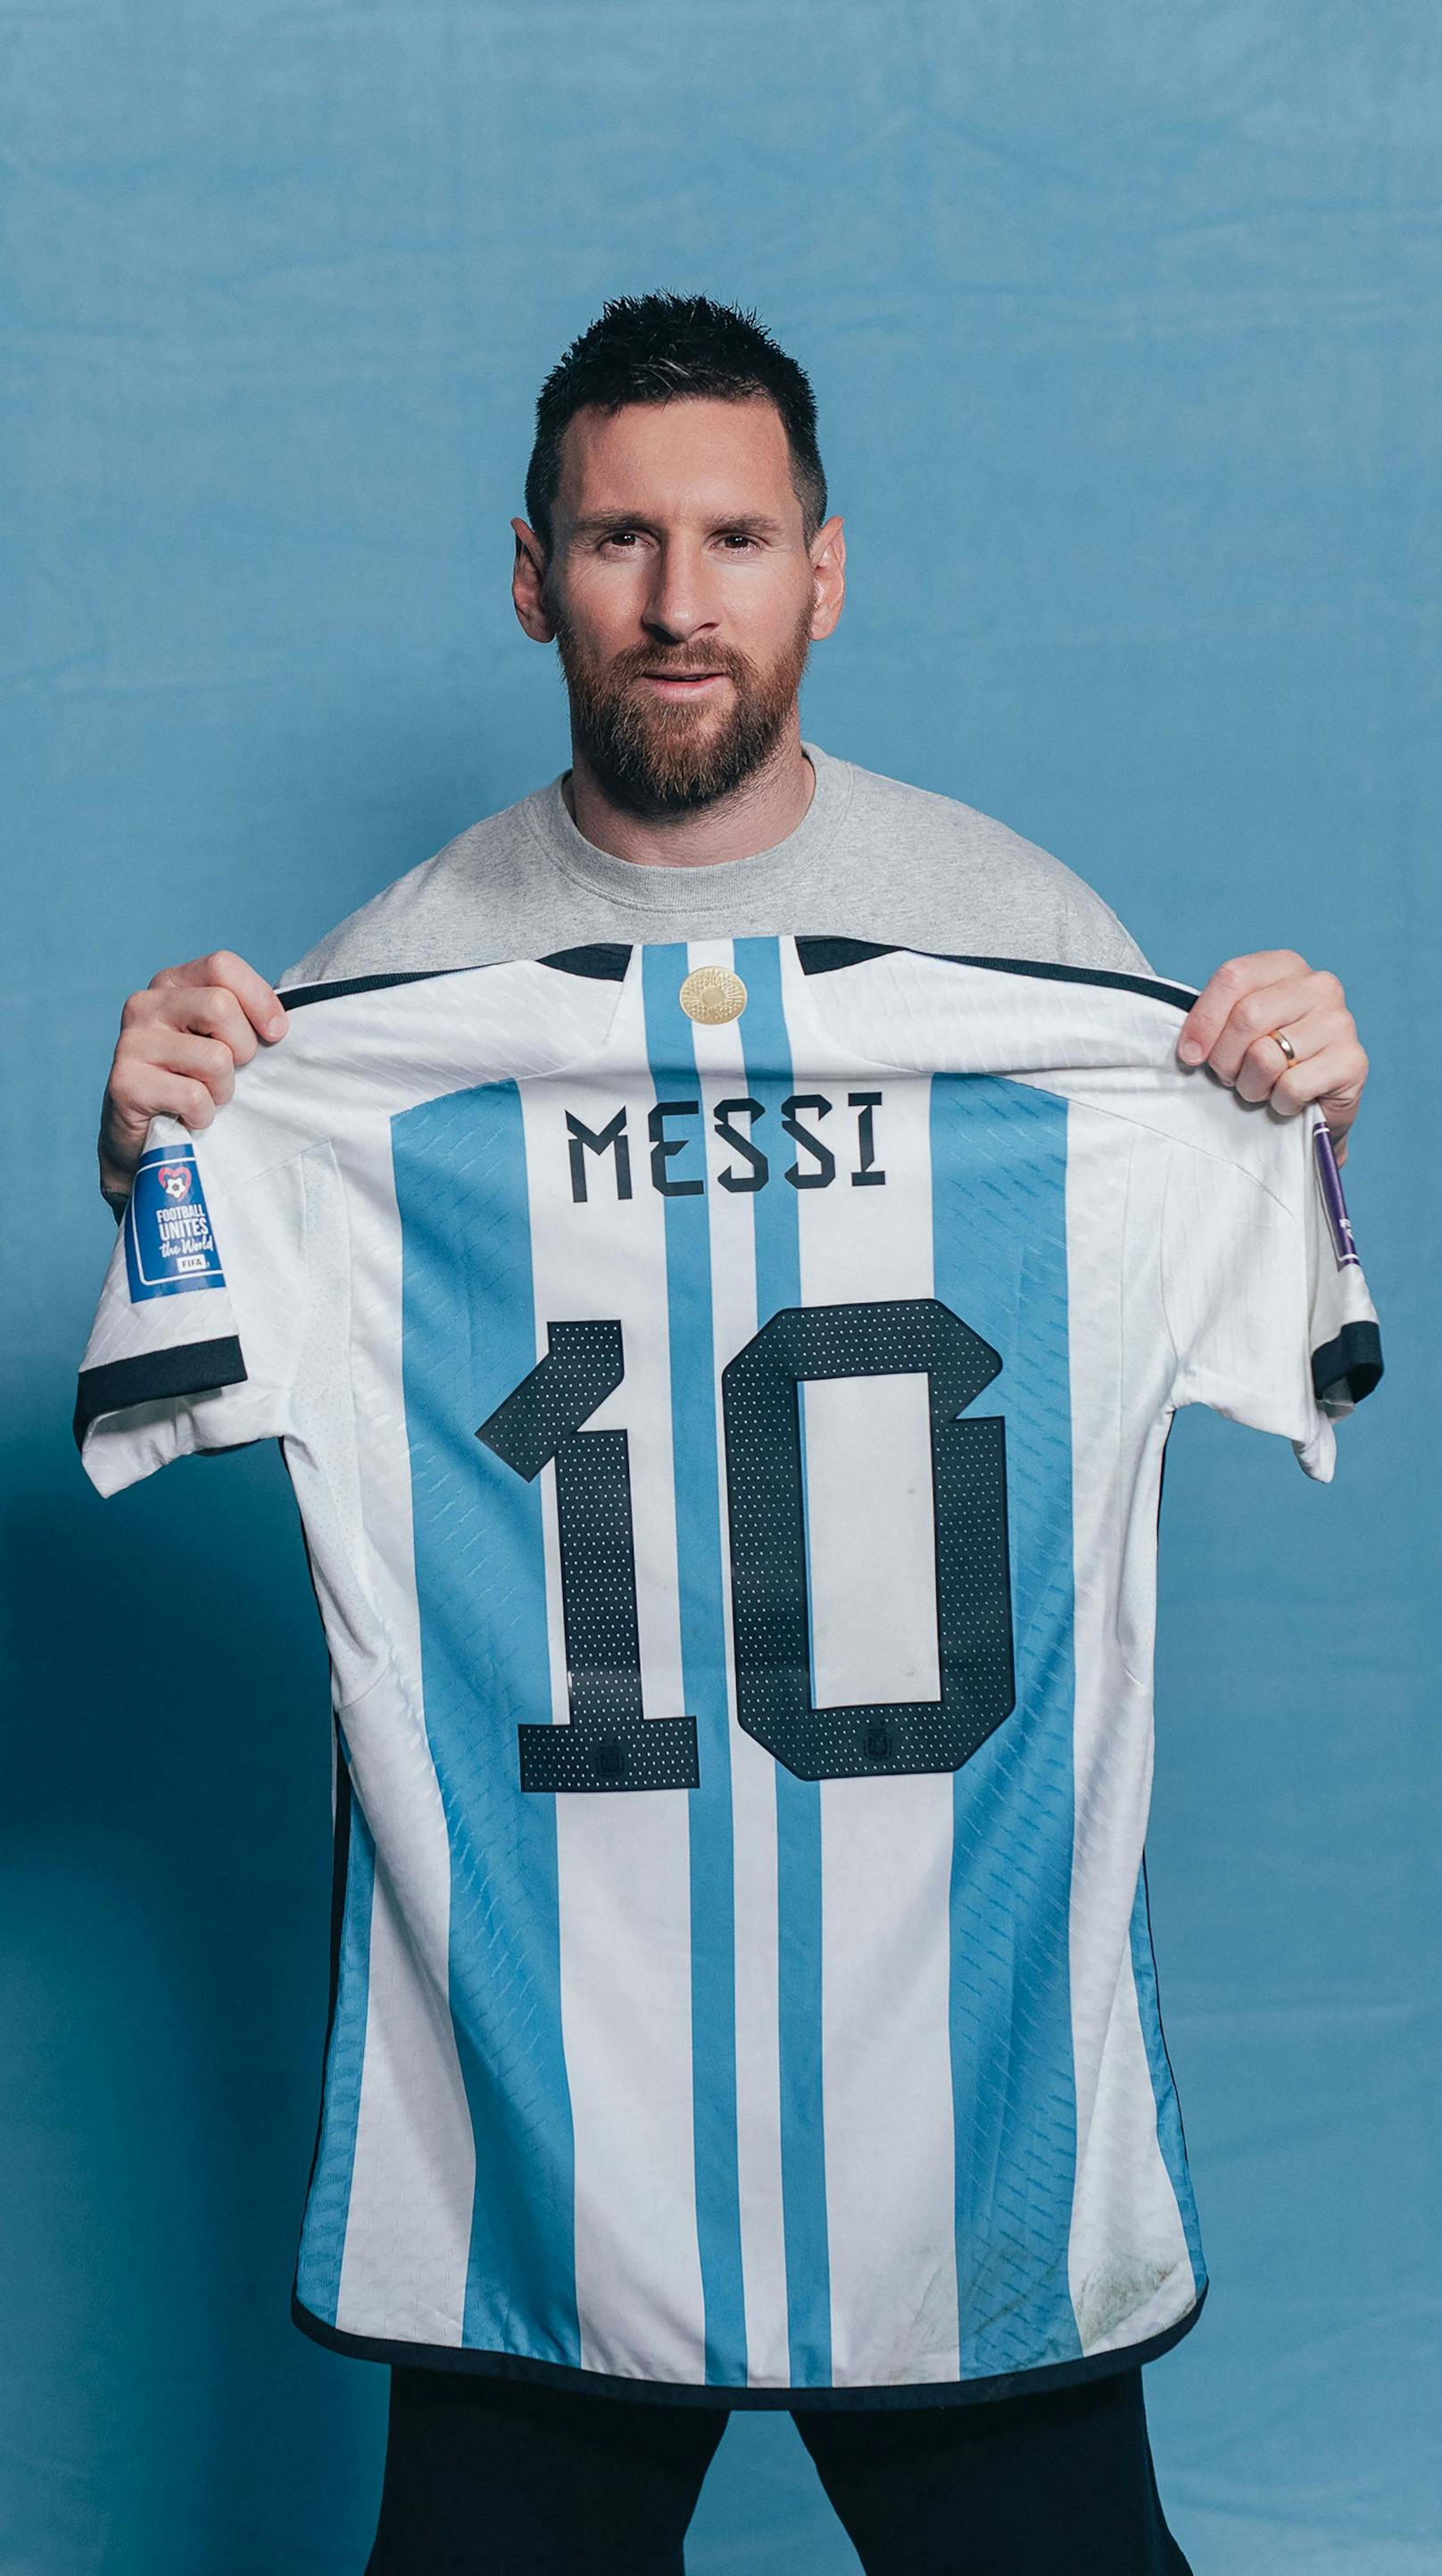 Sechs Argentinien-Trikots, die Lionel Messi bei WM im Katar trug, kommen nun unter den Hammer. Mit der Versteigerung sollen über zehn Millionen Euro erzielt werden.